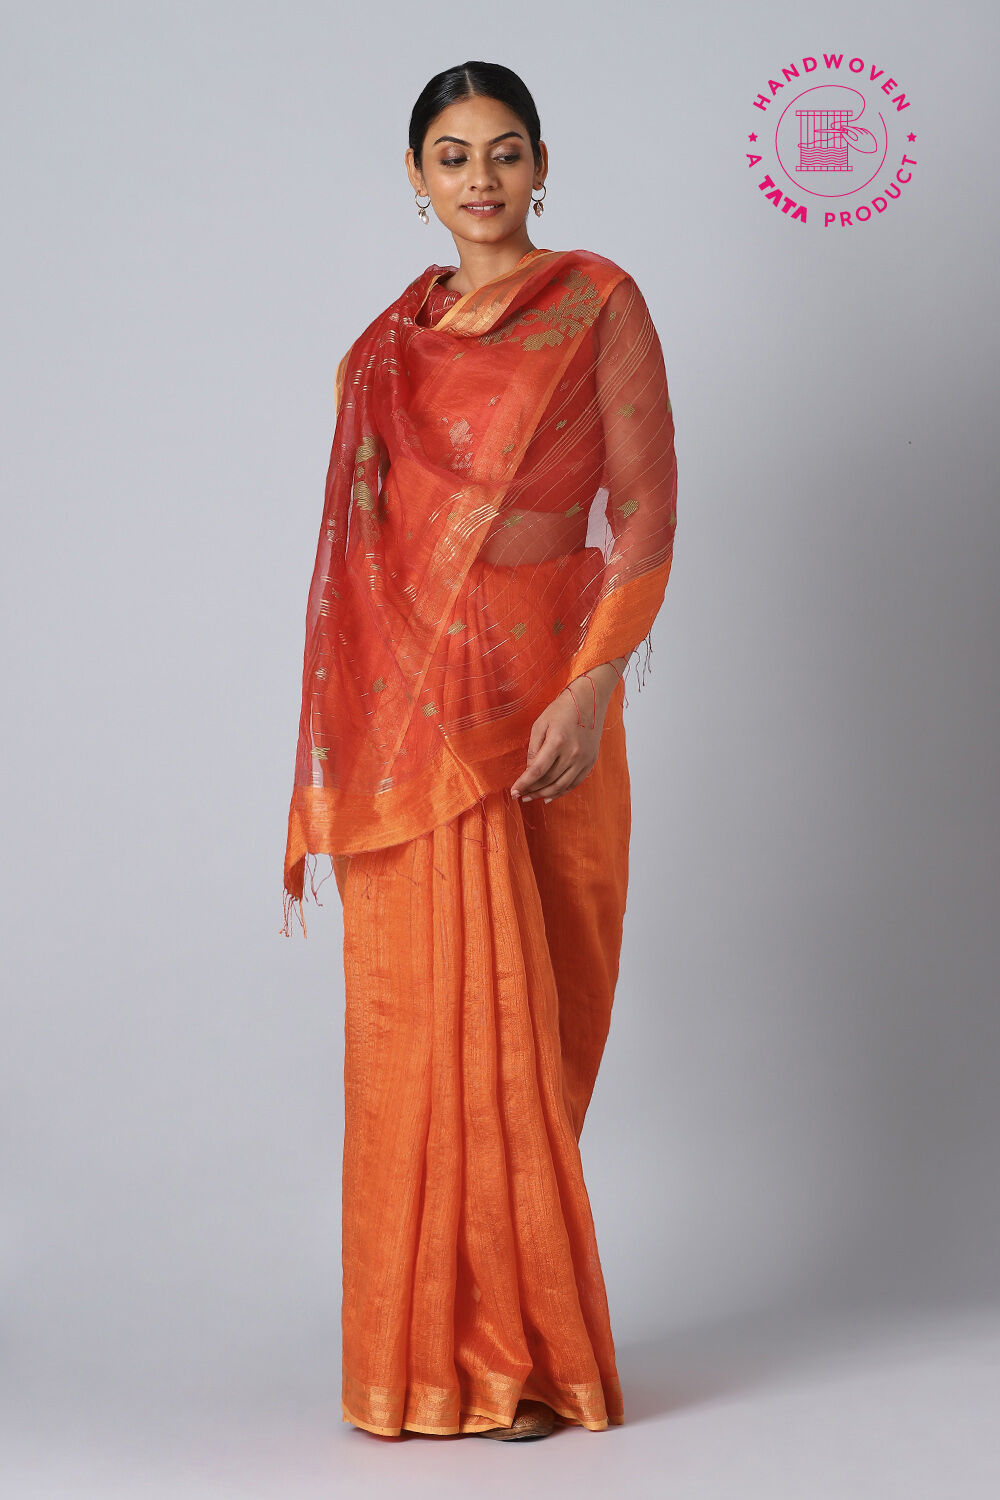 taneira-sarees-dress-materials-start-season-sale-flat-25%-off-ad-bangalore-times-19-07-2019  | Saree dress, Saree, Dress materials